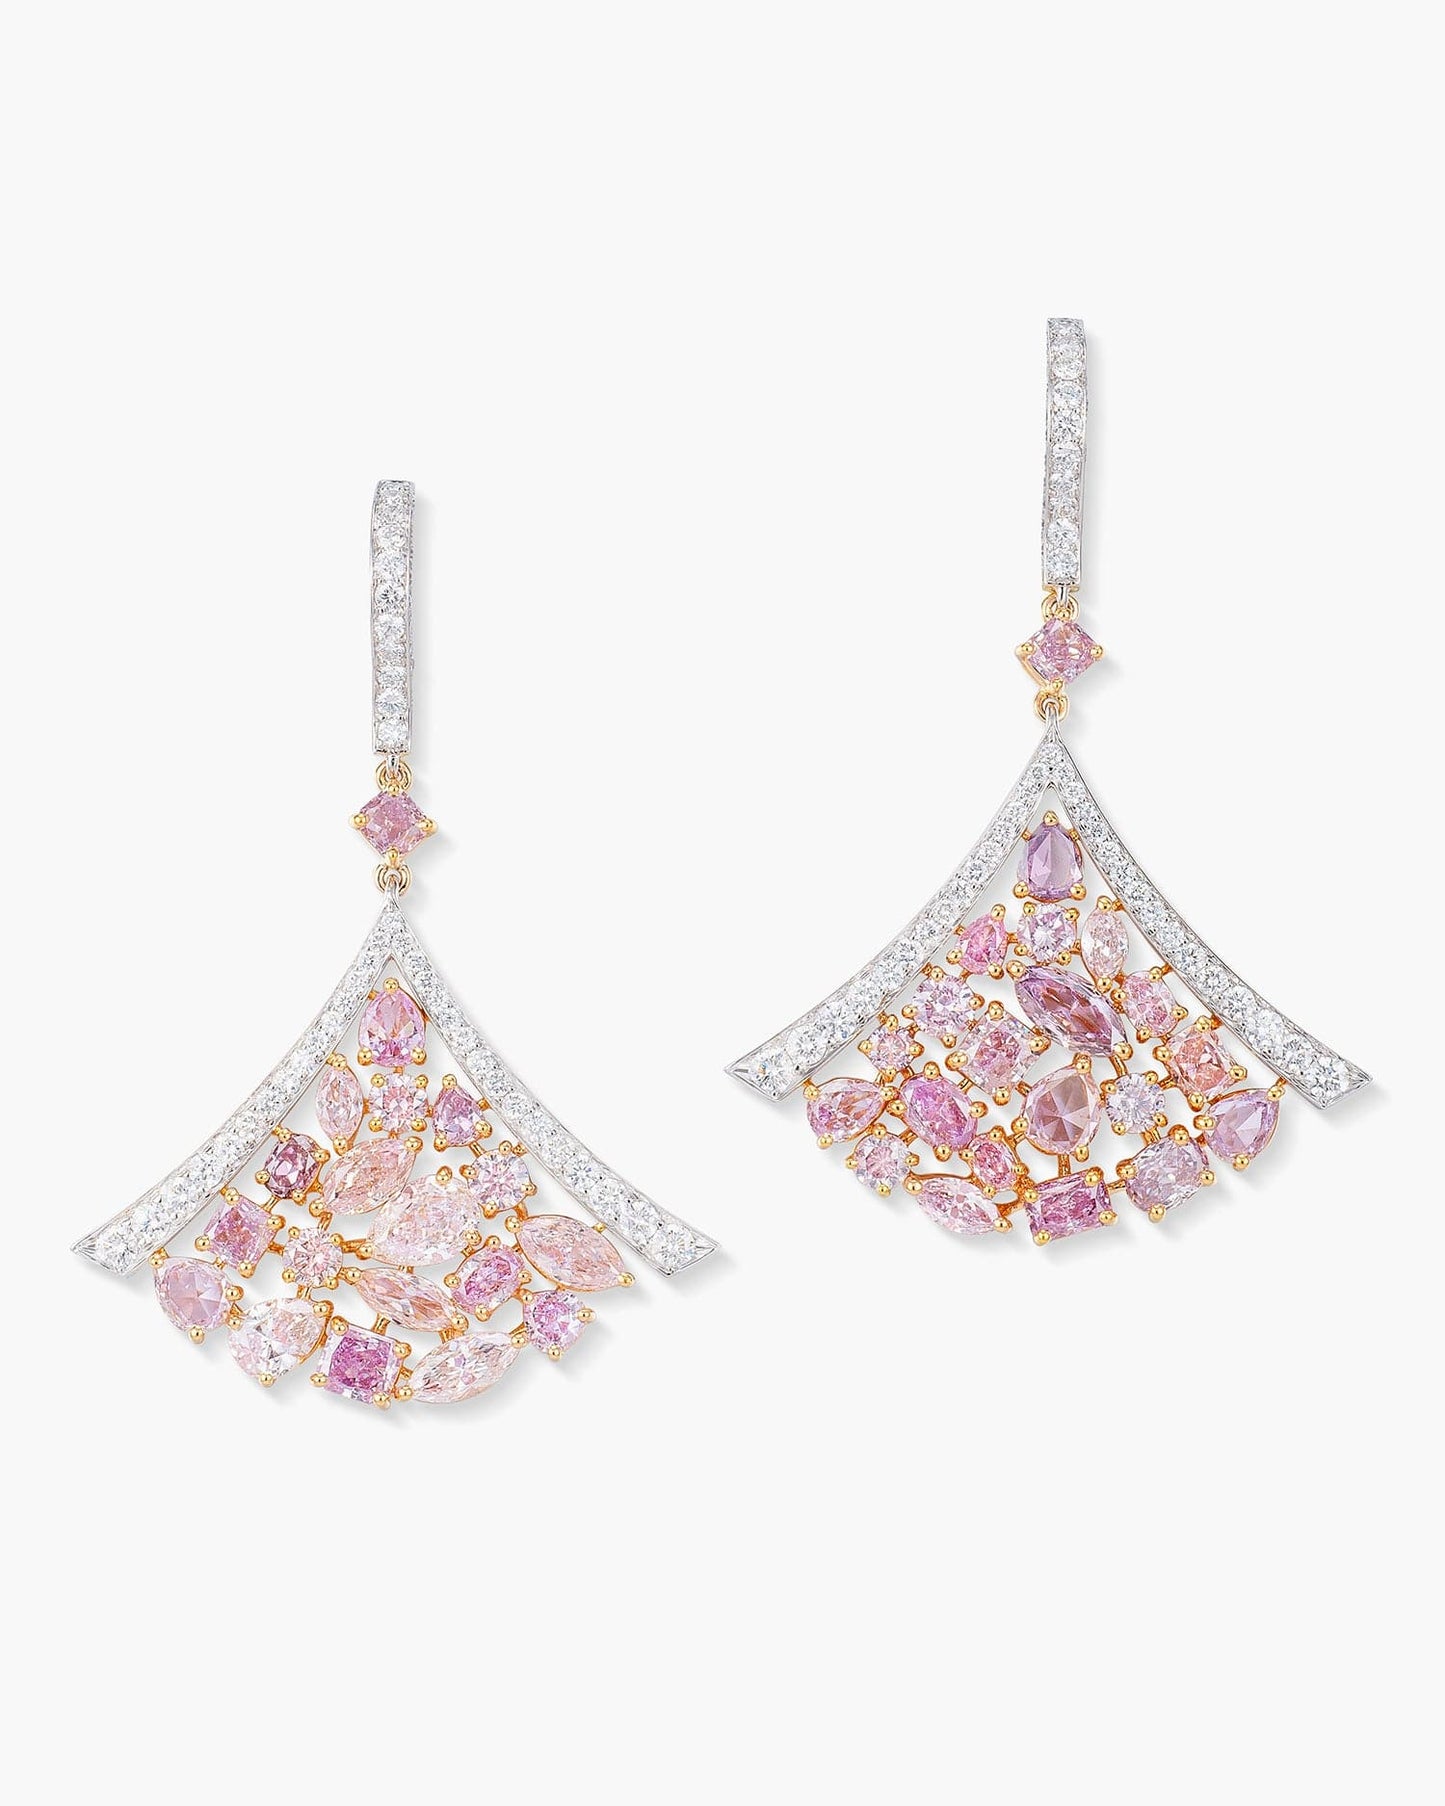 Pink and White Diamond Fan Earrings